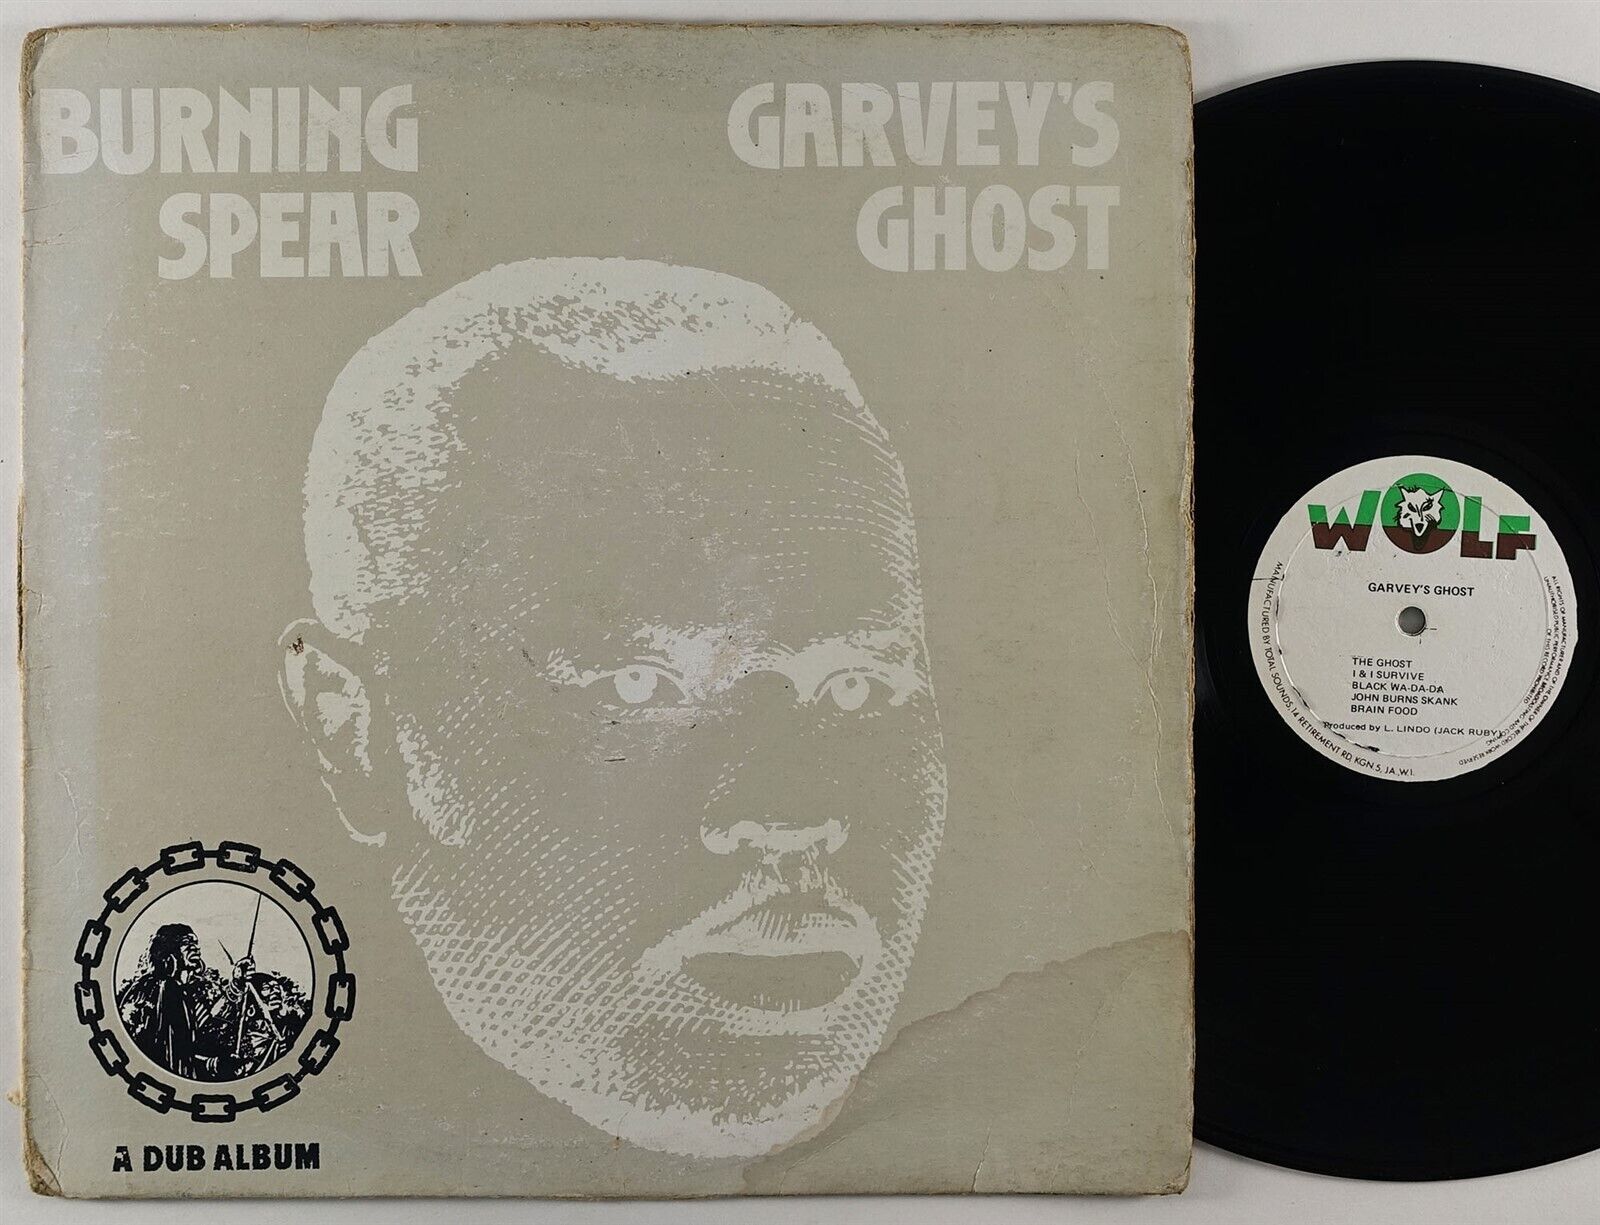 Pic 1 Burning Spear "Garvey's Ghost" Reggae LP Wolf